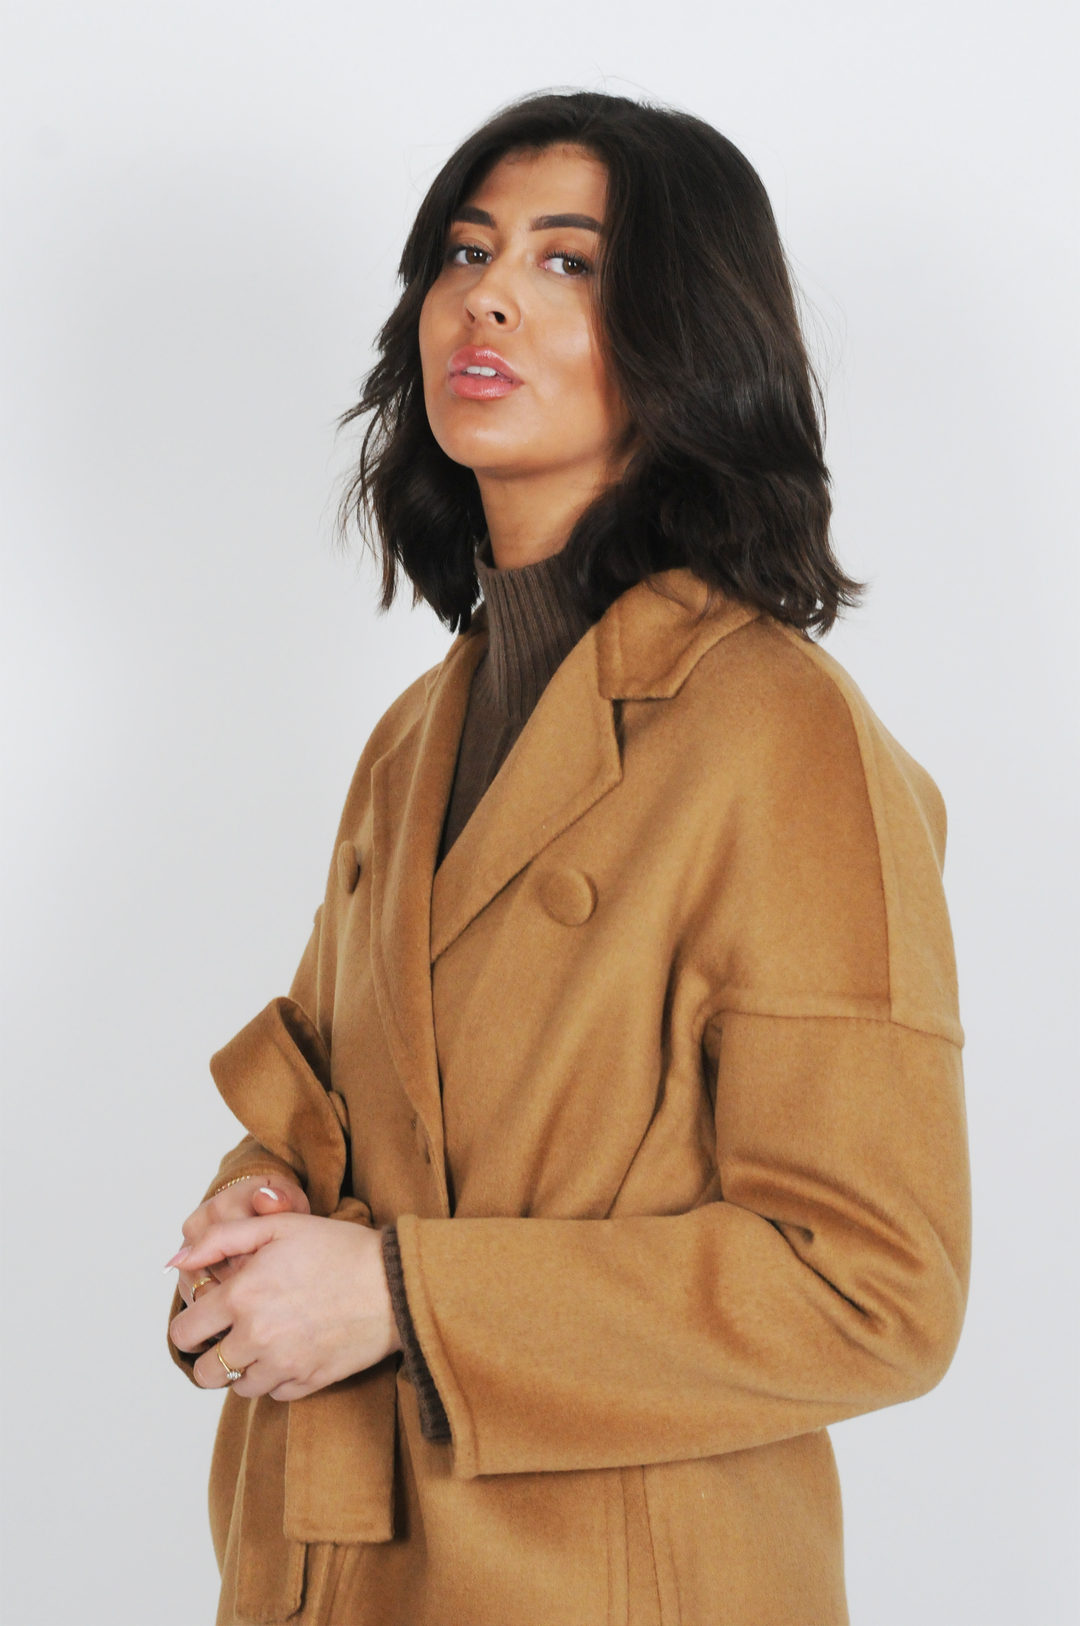 Harlow, 105 cm. - Collar - Wool coat - Women - Cognac